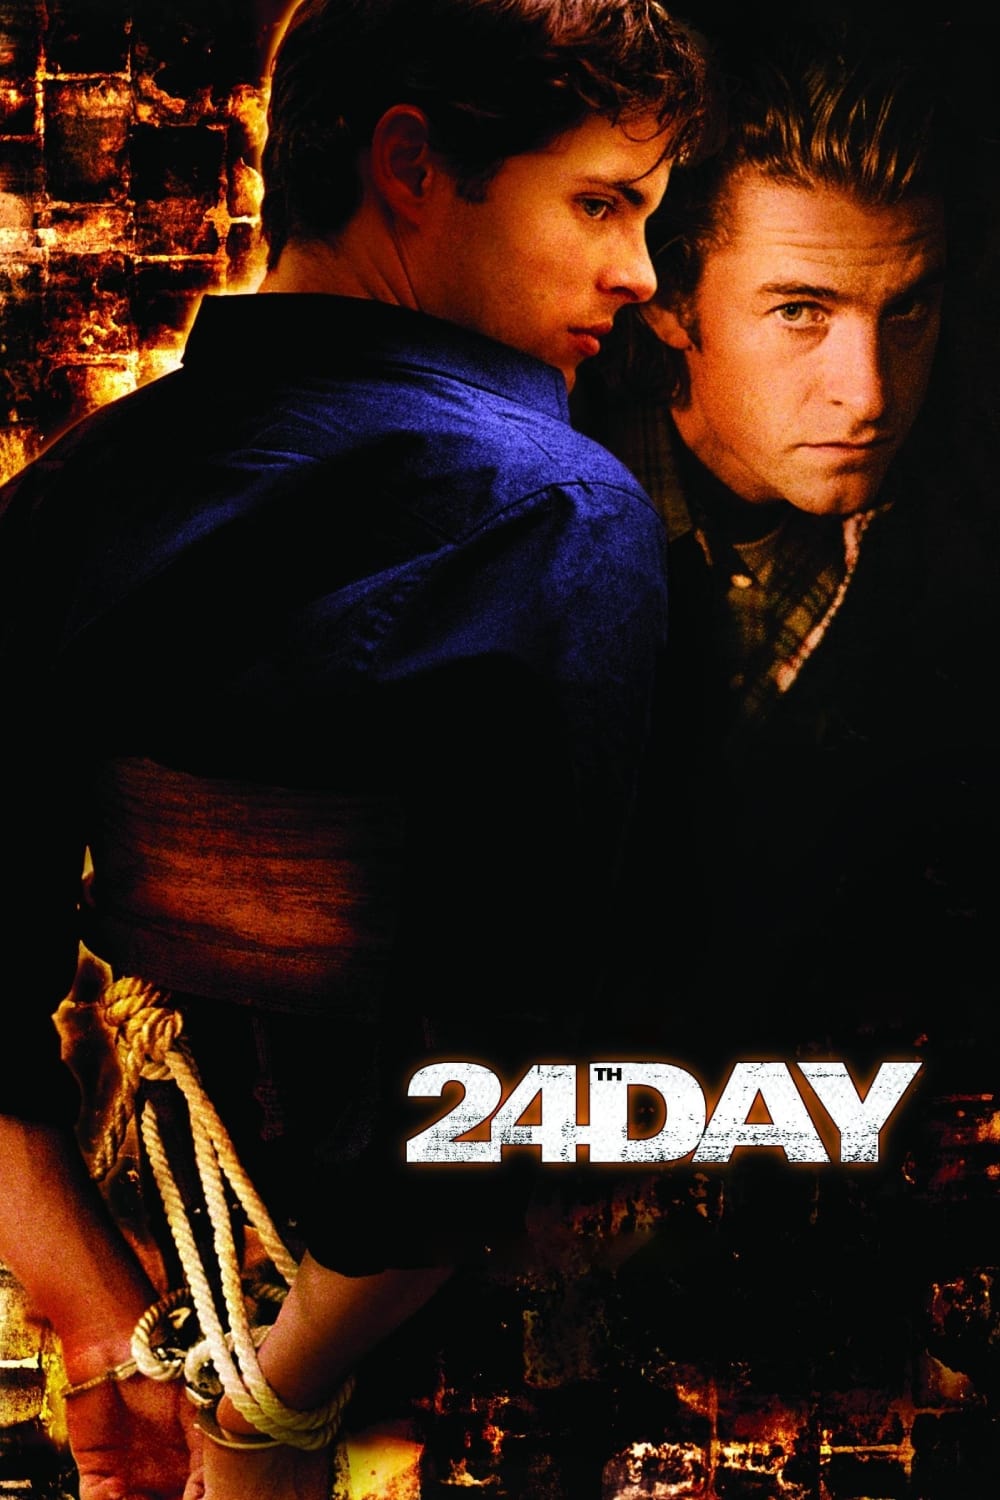 Le 24eme jour (2004)